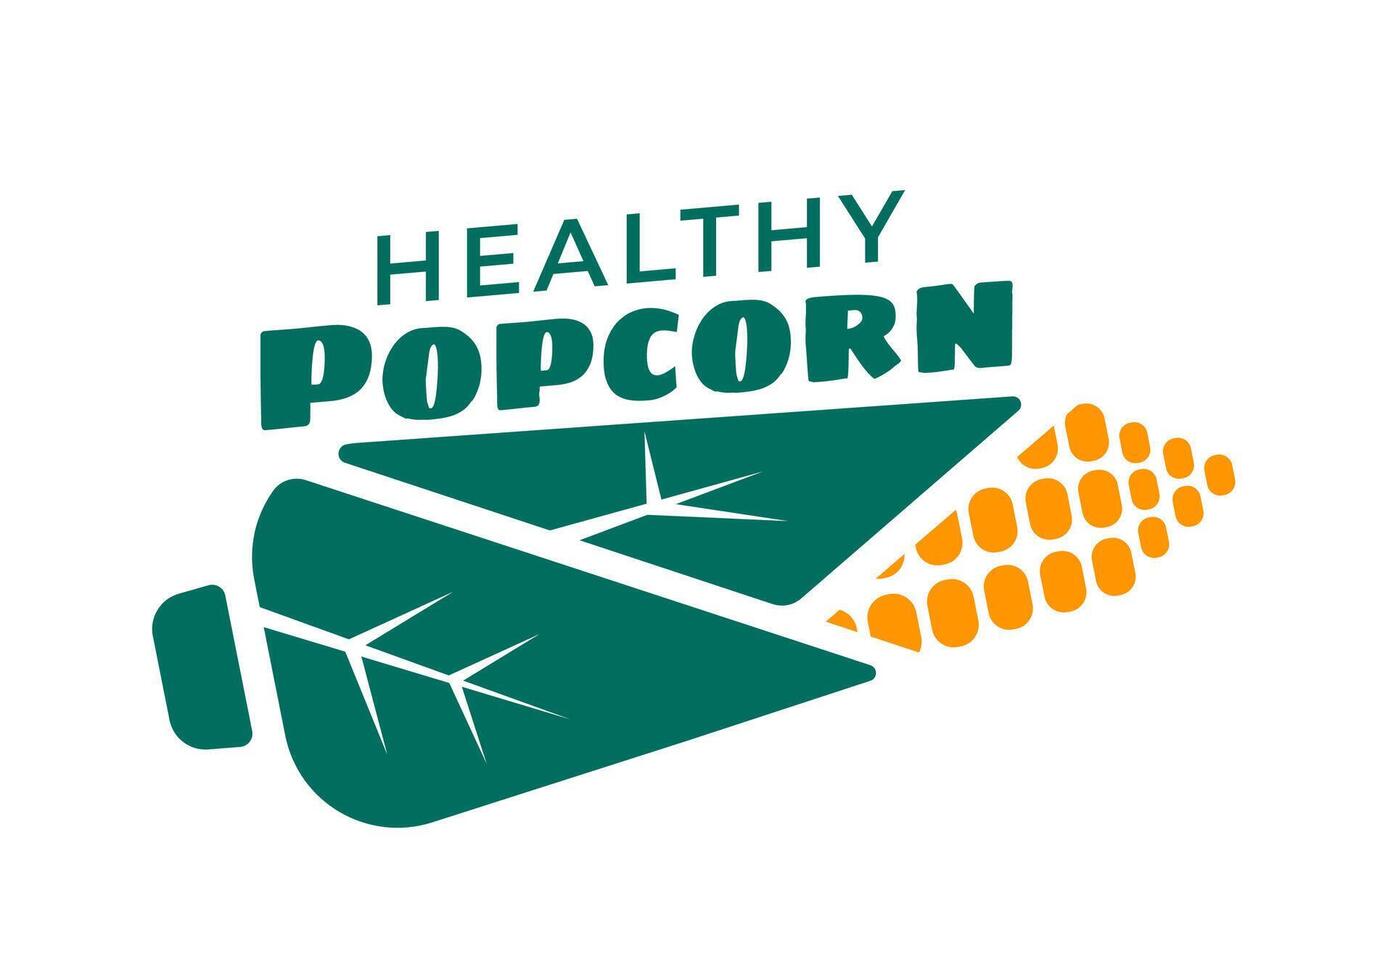 gezond popcorn tussendoortje, smakelijk biologisch voedsel banier vector